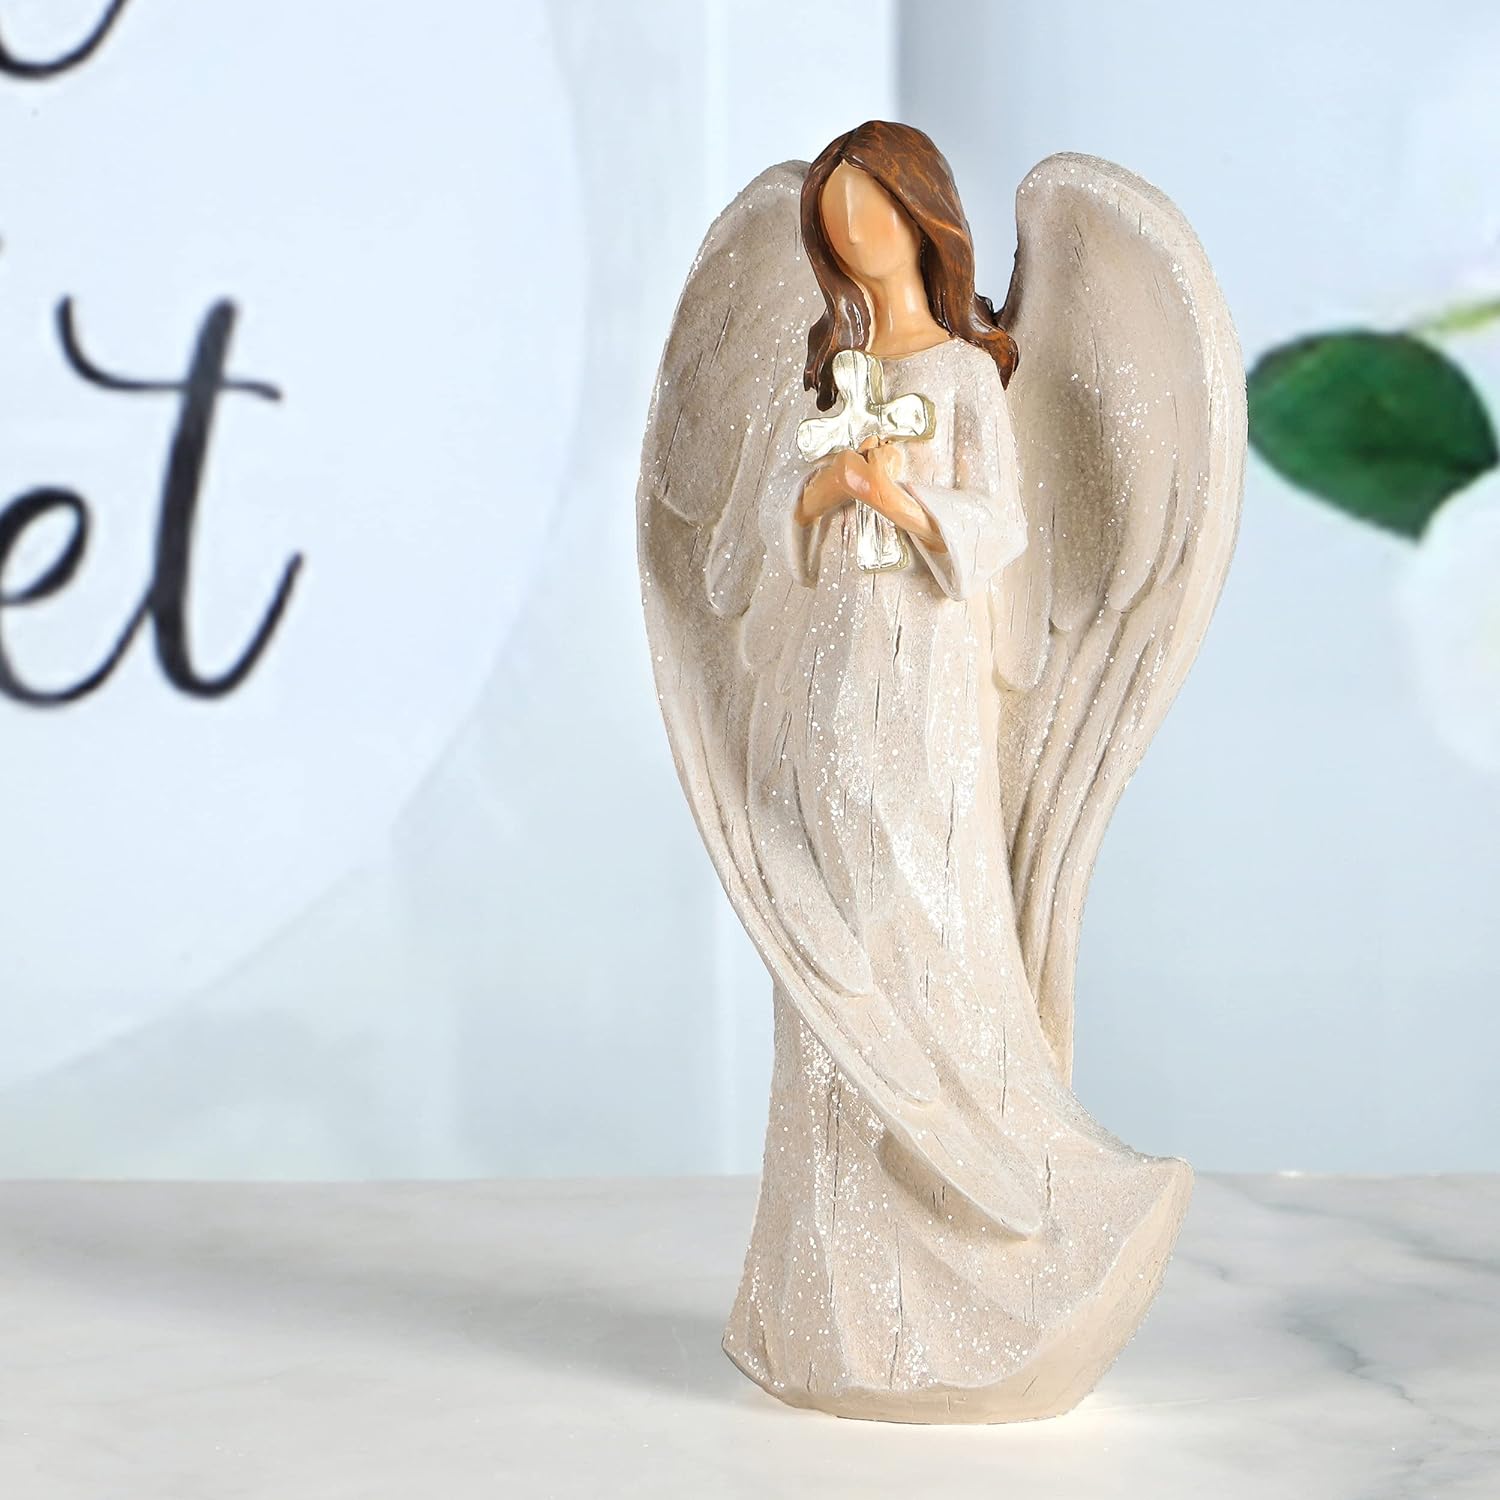 دعا کردن مجسمه فرشته